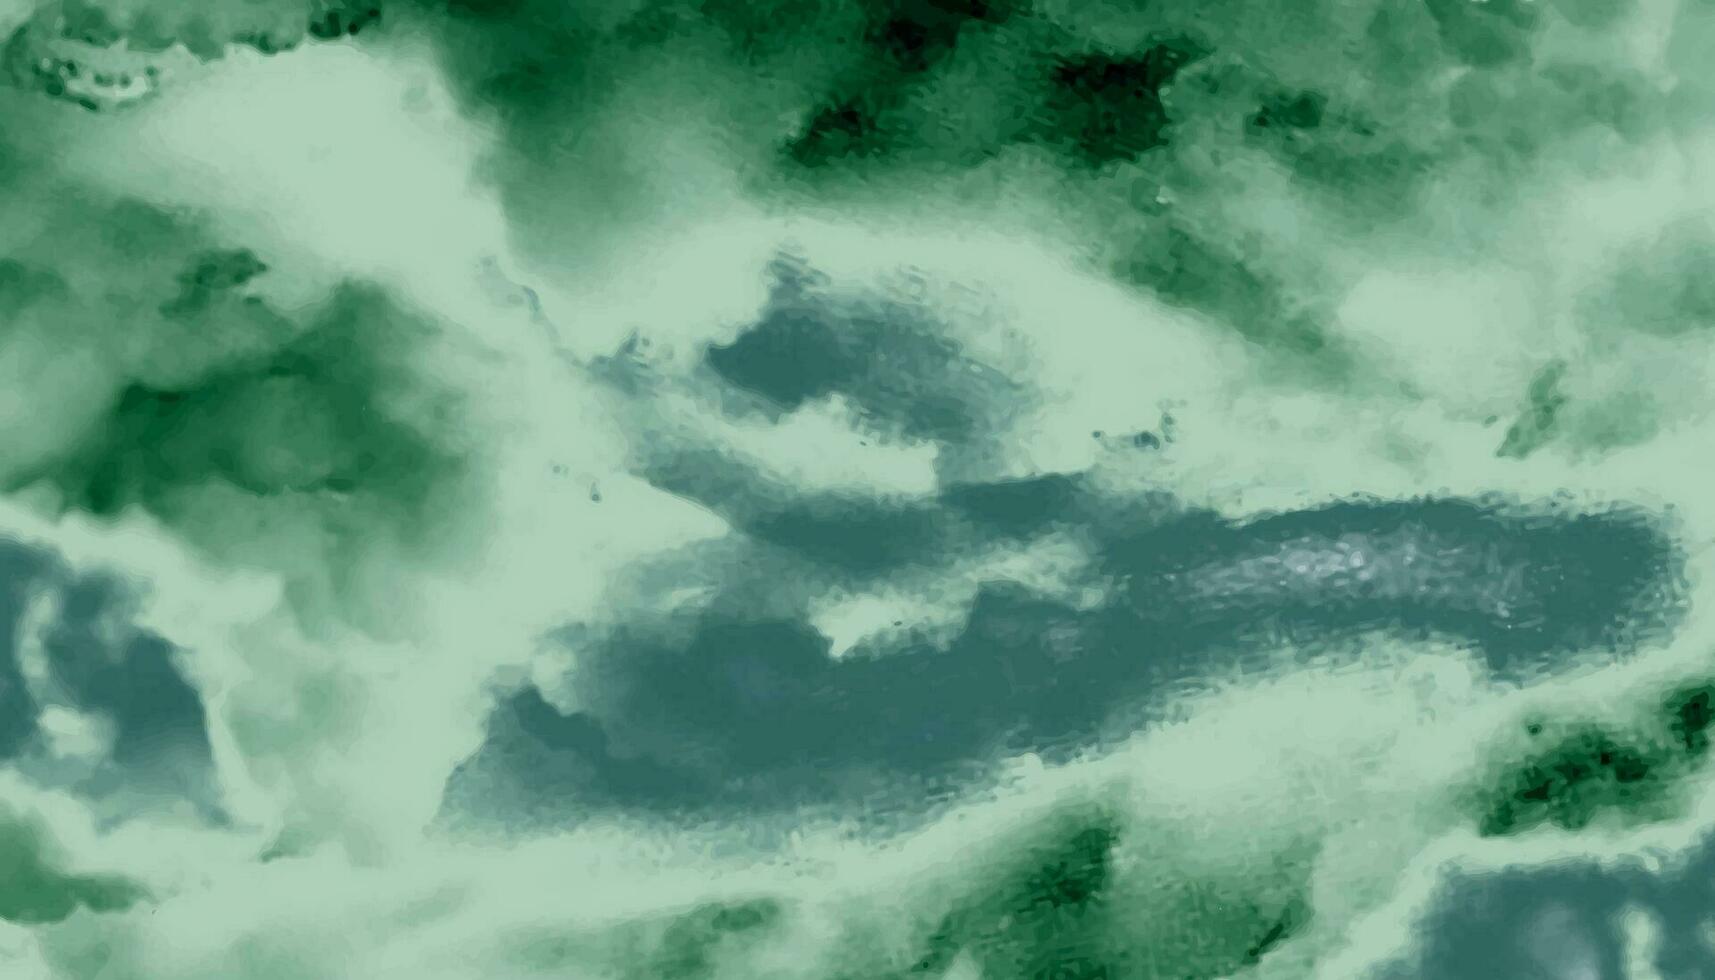 bunt Aquarell Hintergrund von abstrakt Sonnenuntergang Himmel mit geschwollen Wolken im hell Grün und Blau Farbe Design. modern Aquarell Design waschen aqua gemalt Textur schließen hoch, grungy vektor